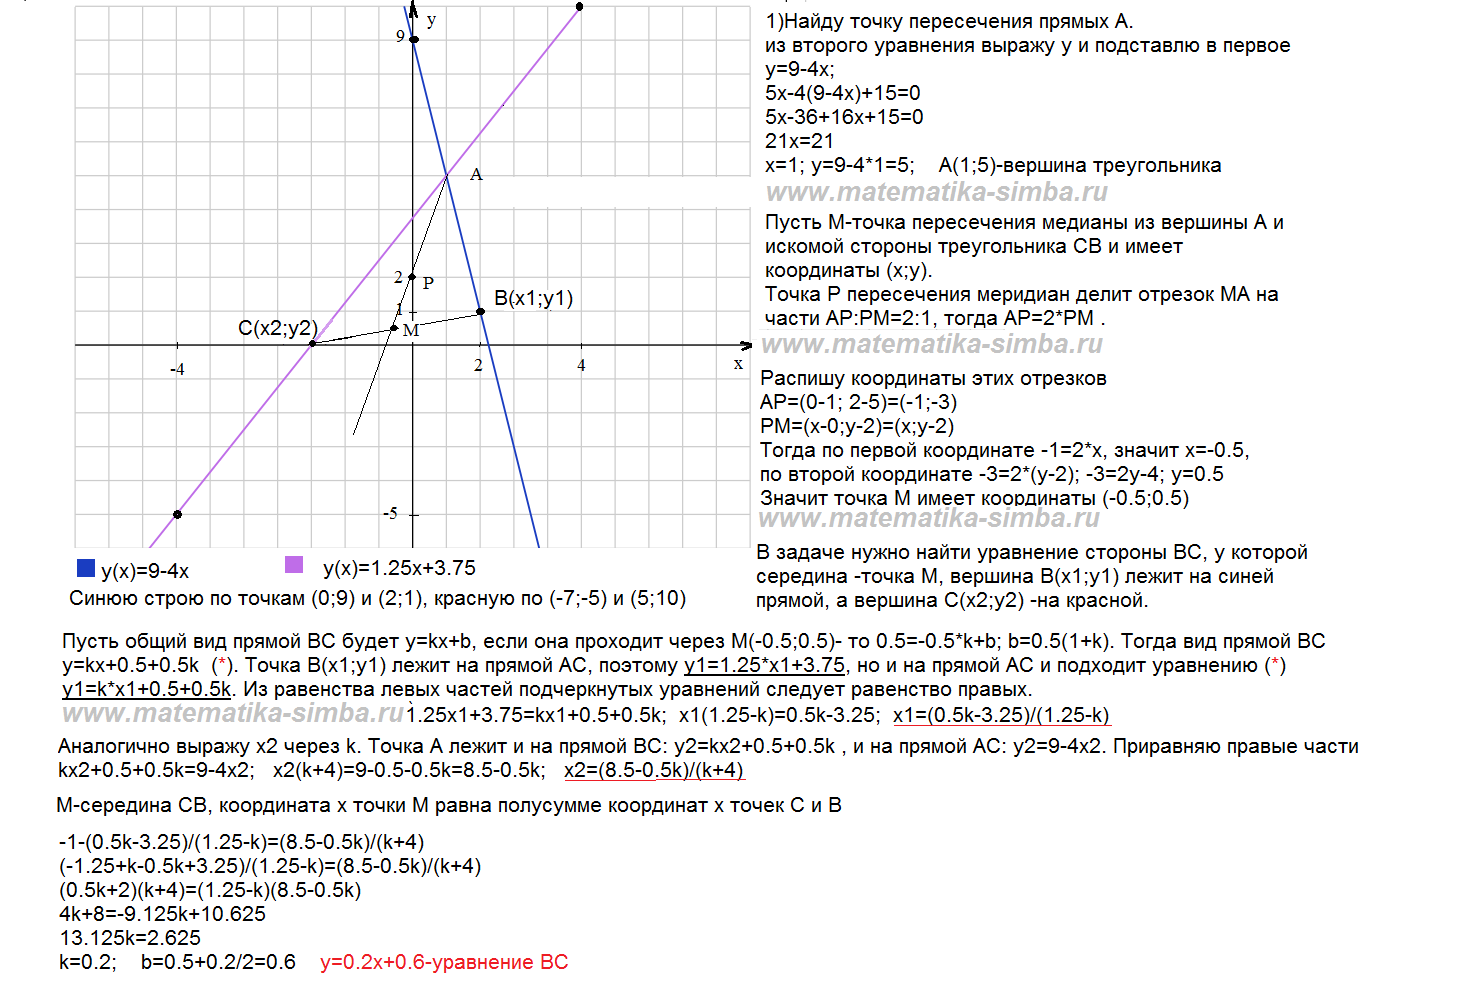 Найти координаты точки высоты треугольника. Уравнение сторон треугольника. Составления уравнения сторон. Даны уравнения сторон треугольника. Уравнение стороны через координаты.